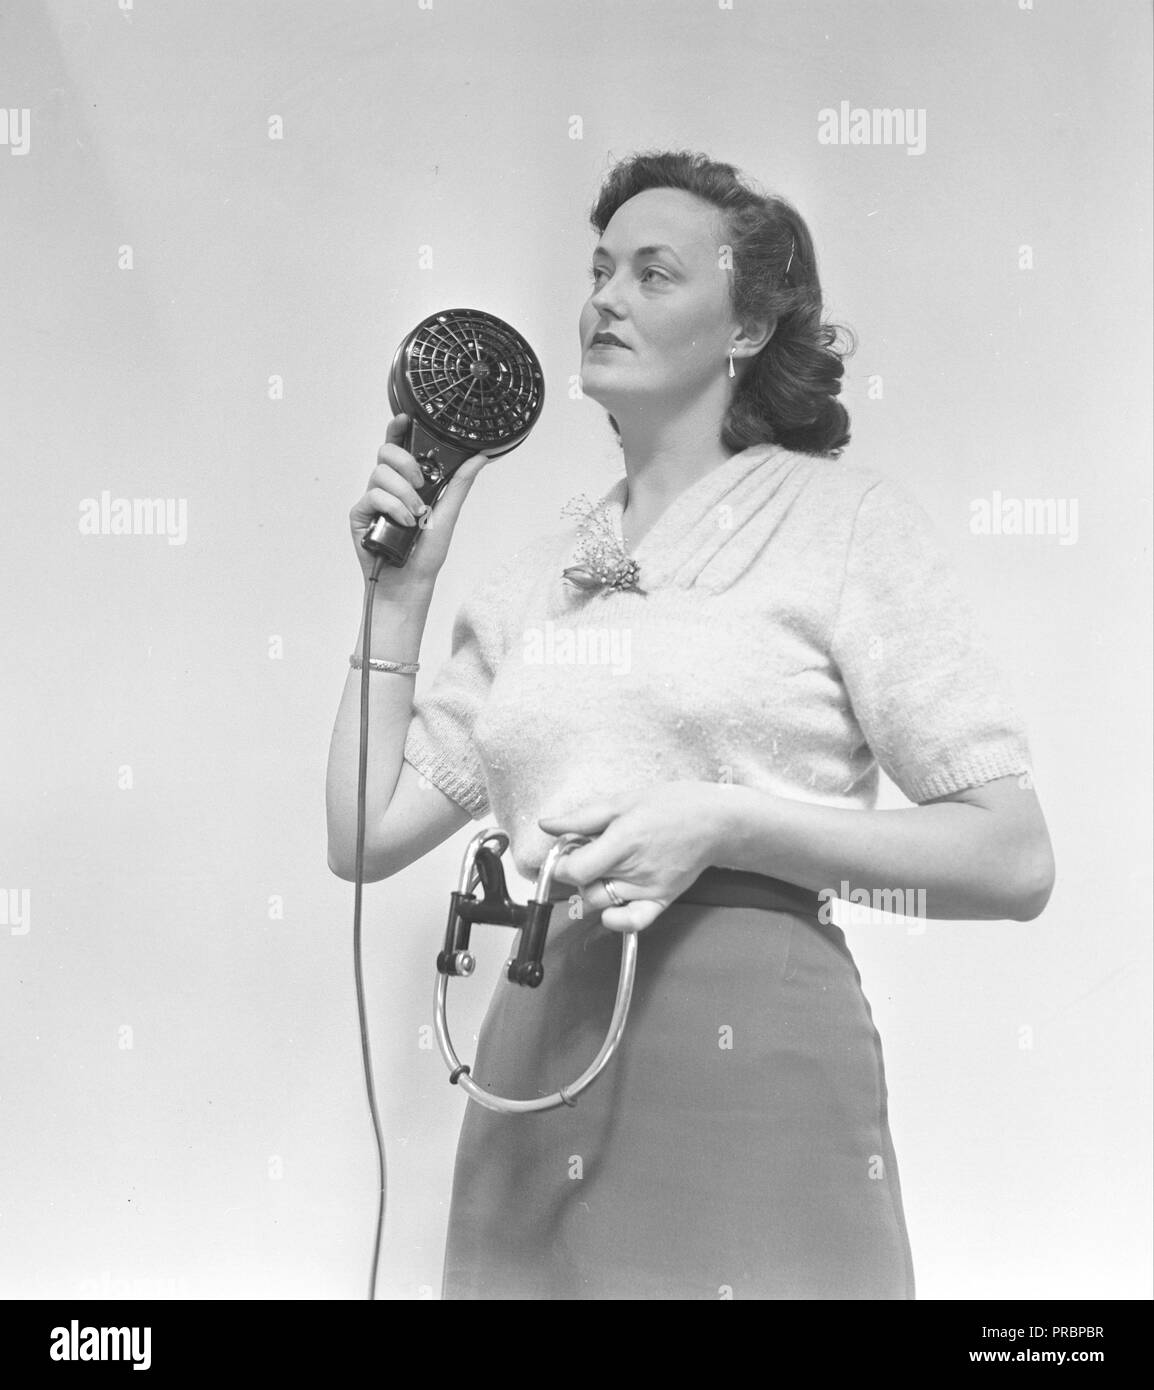 Föhn in den 1950er Jahren. Eine Frau an der Sankt Eriks-Mässan 1952. Jährliche internationale Konsumgütermesse in Stockholm, Schweden. Stockfoto